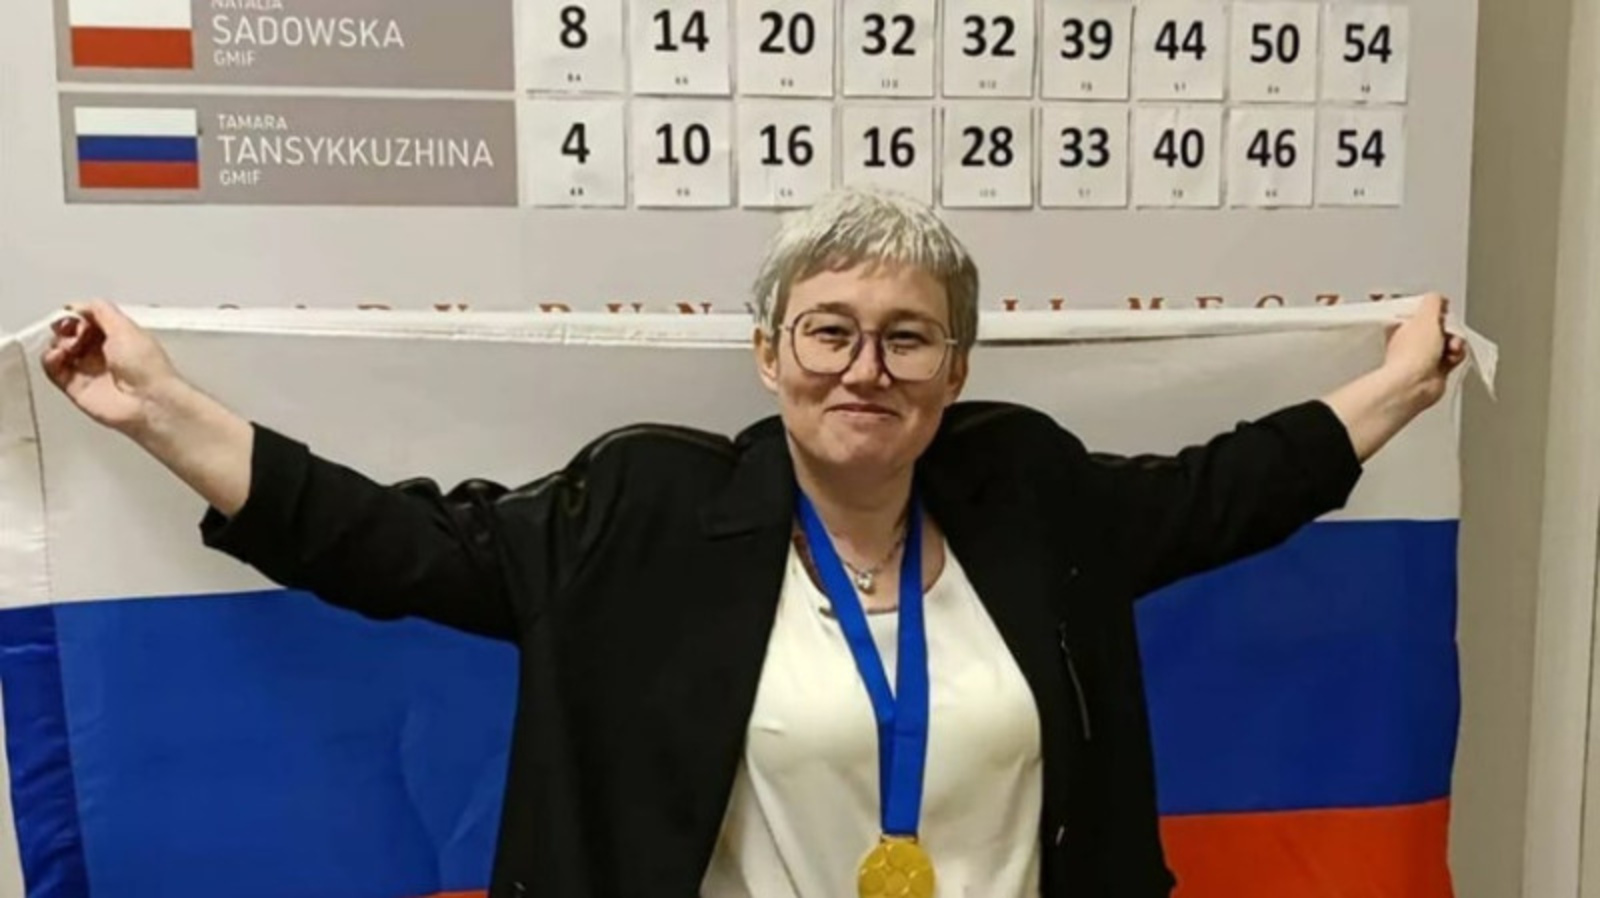 Чемпионку мира по шашкам Тамару Тансыккужину исключили из мирового рейтинга